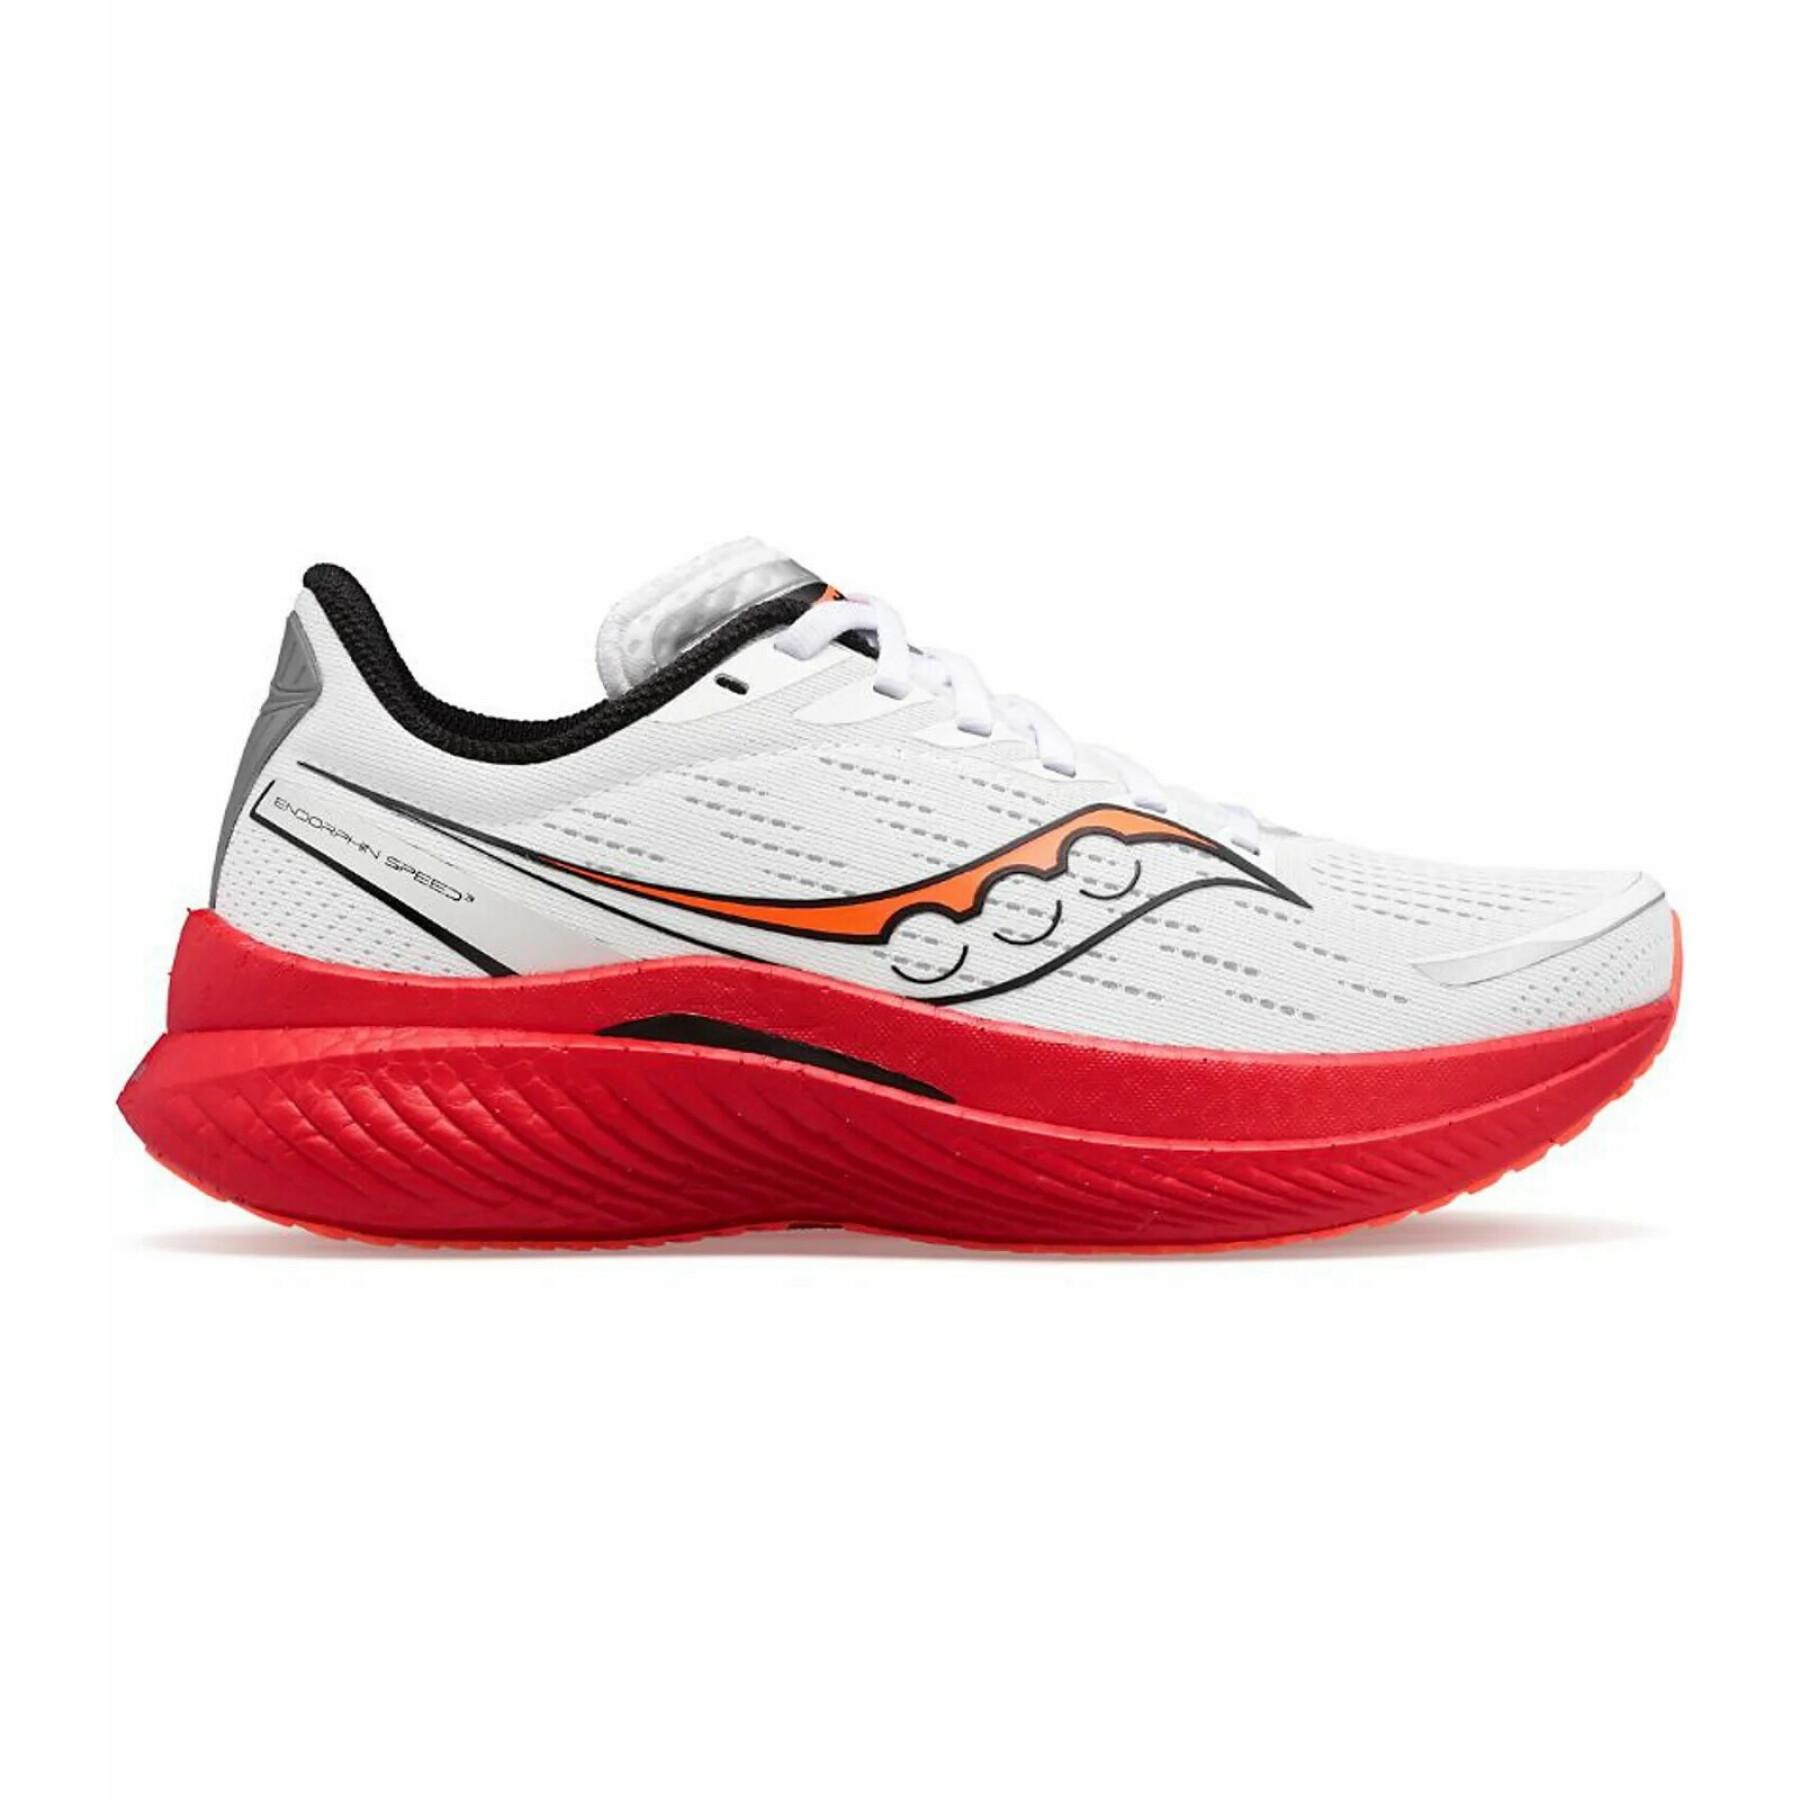 Chaussures de running Saucony Endorphin Speed 3